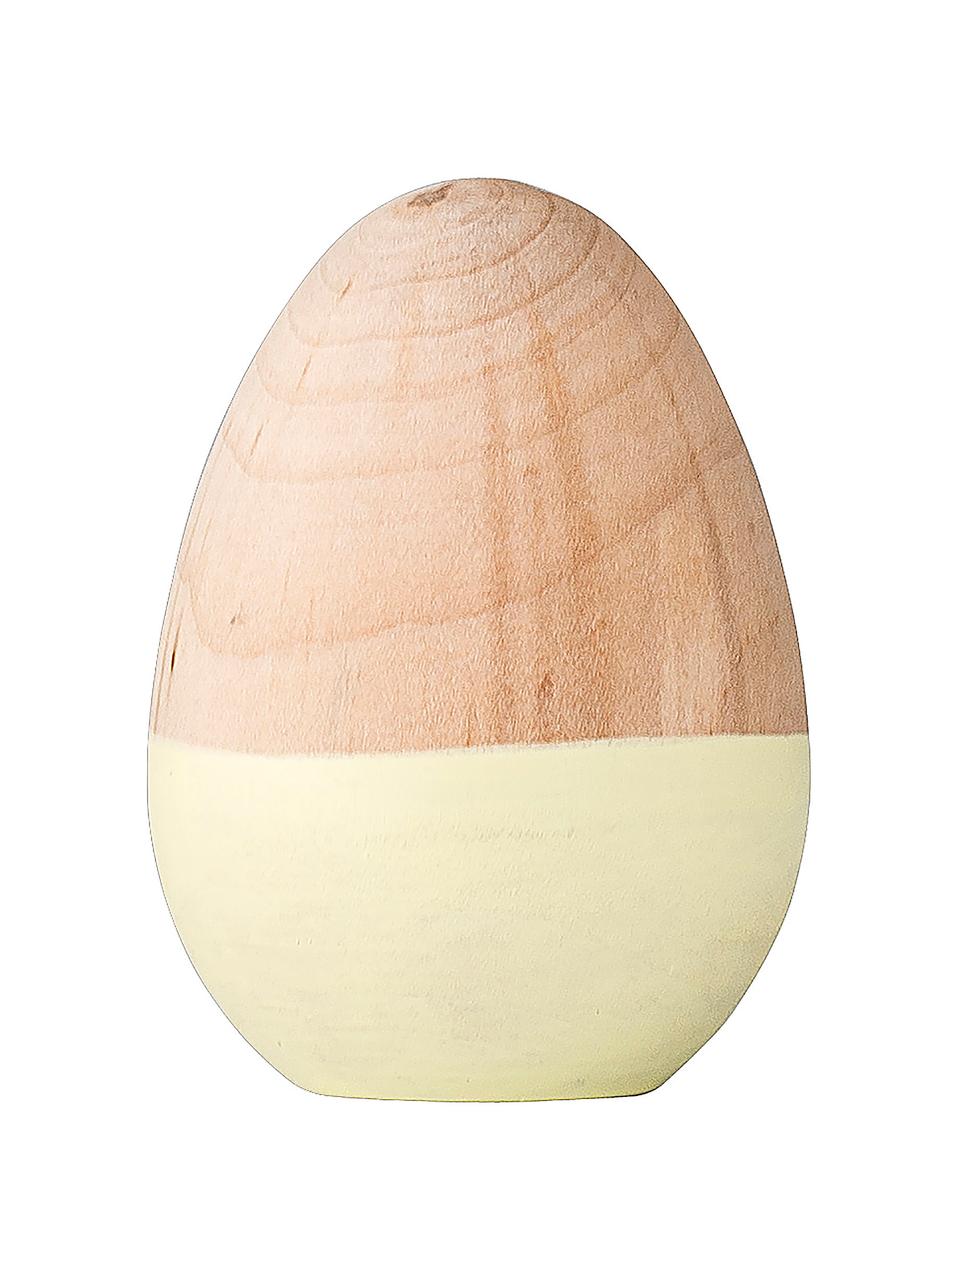 Dekorace Egg, Potažené dřevo, Žlutá, dřevo, Ø 5 cm, V 7 cm